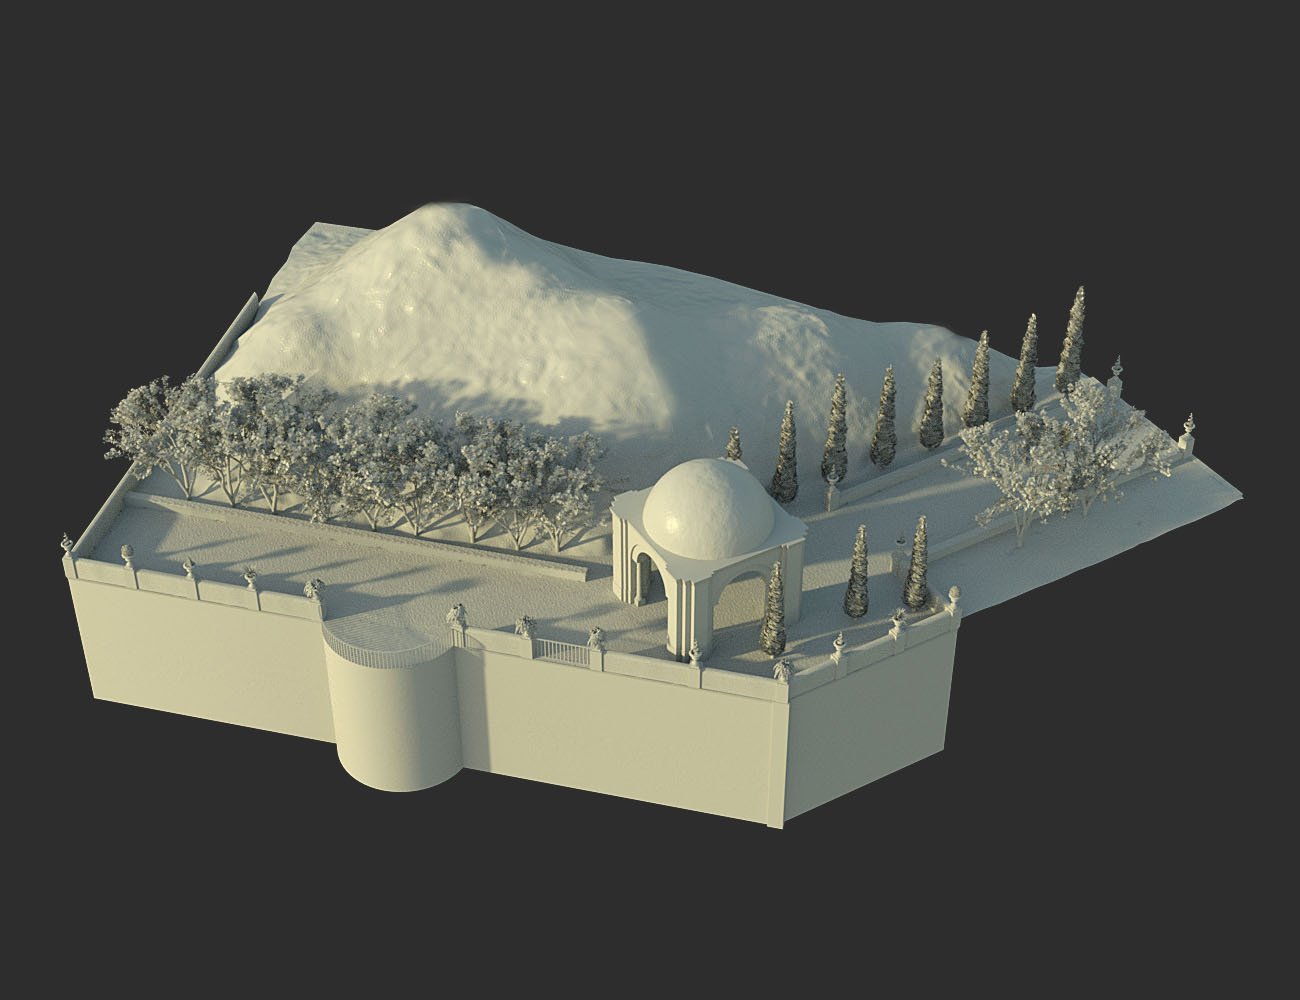 Mountaintop Gazebo and Balcony by: bitwelder, 3D Models by Daz 3D